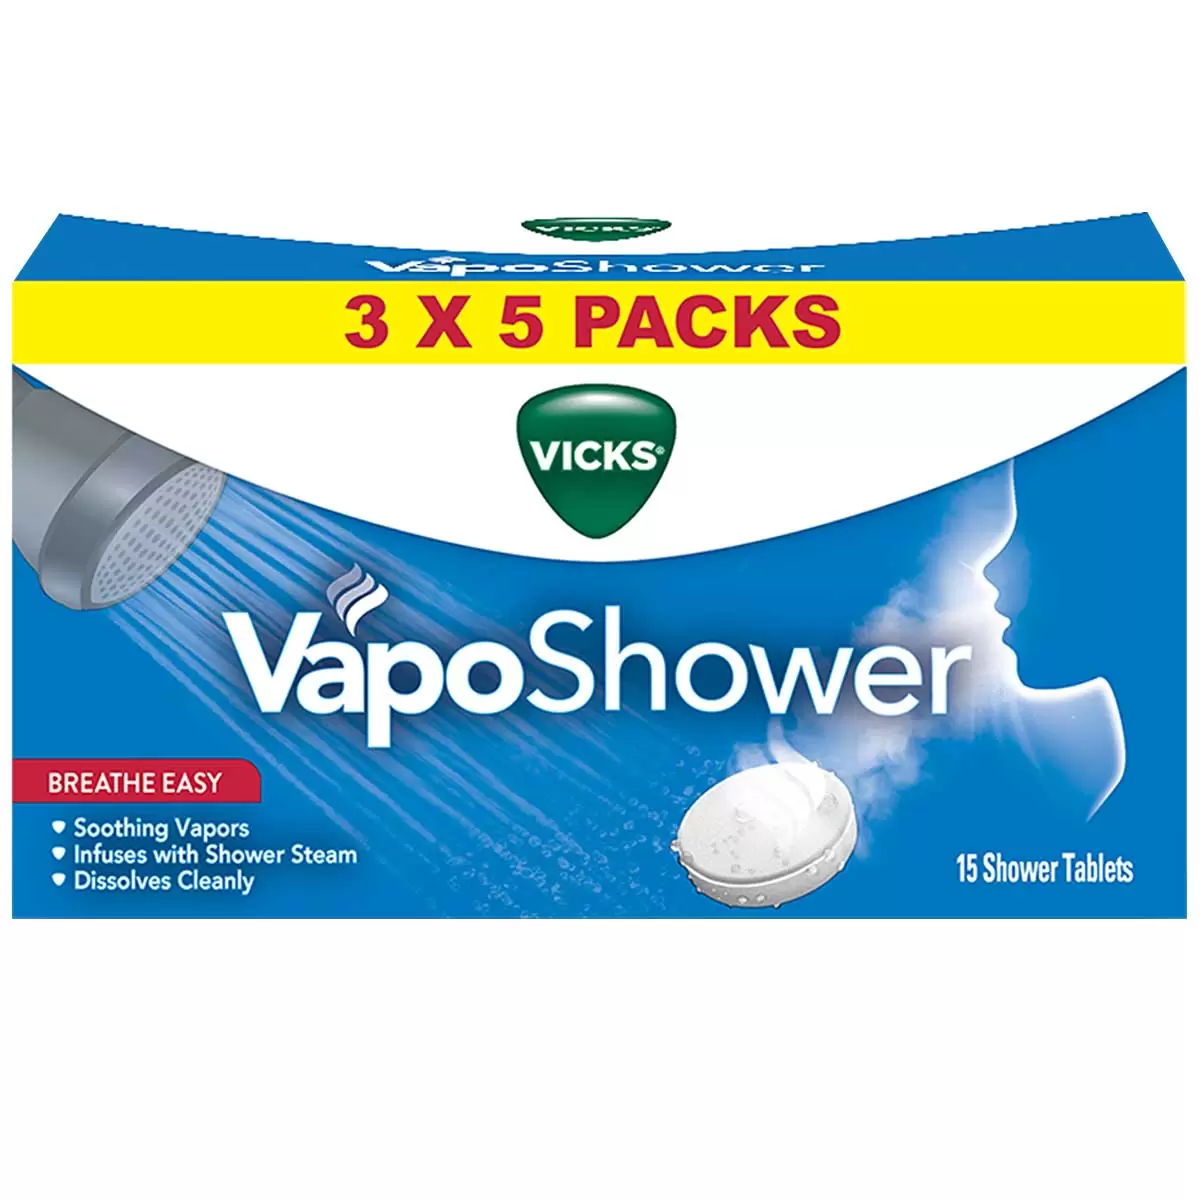 Vicks Vaposhower 3 x 5 Pack